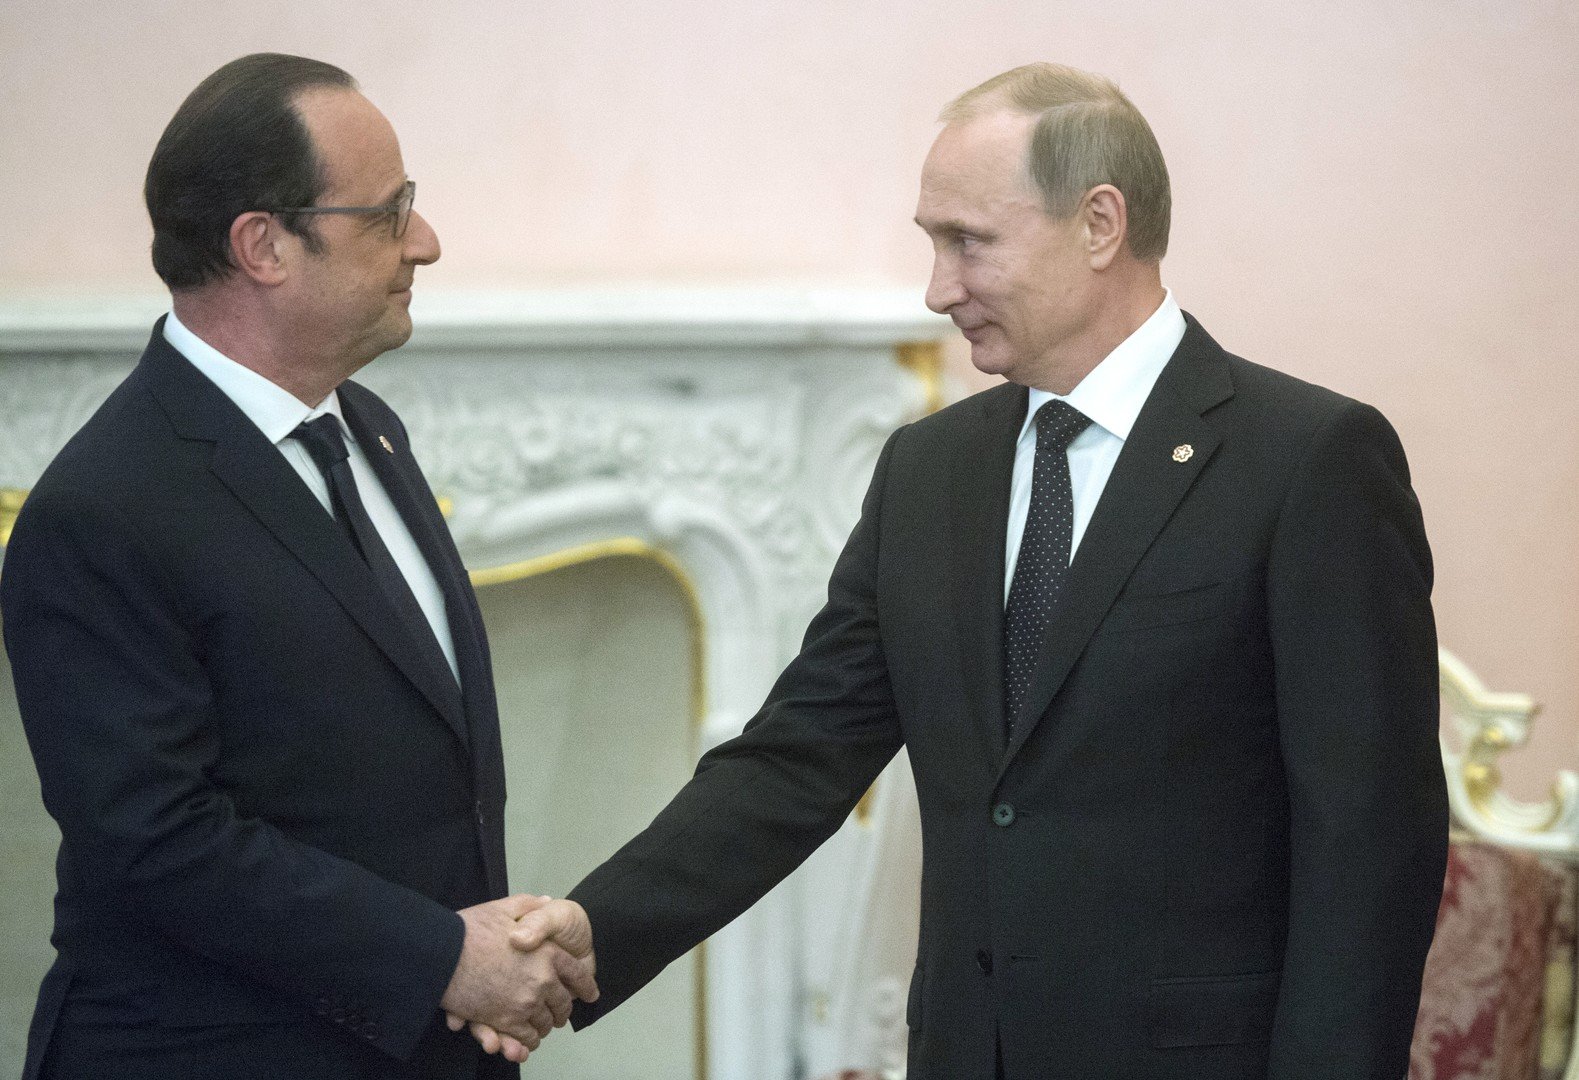 فرنسا تعيد 900 مليون يورو لروسيا بعد إلغاء صفقة 